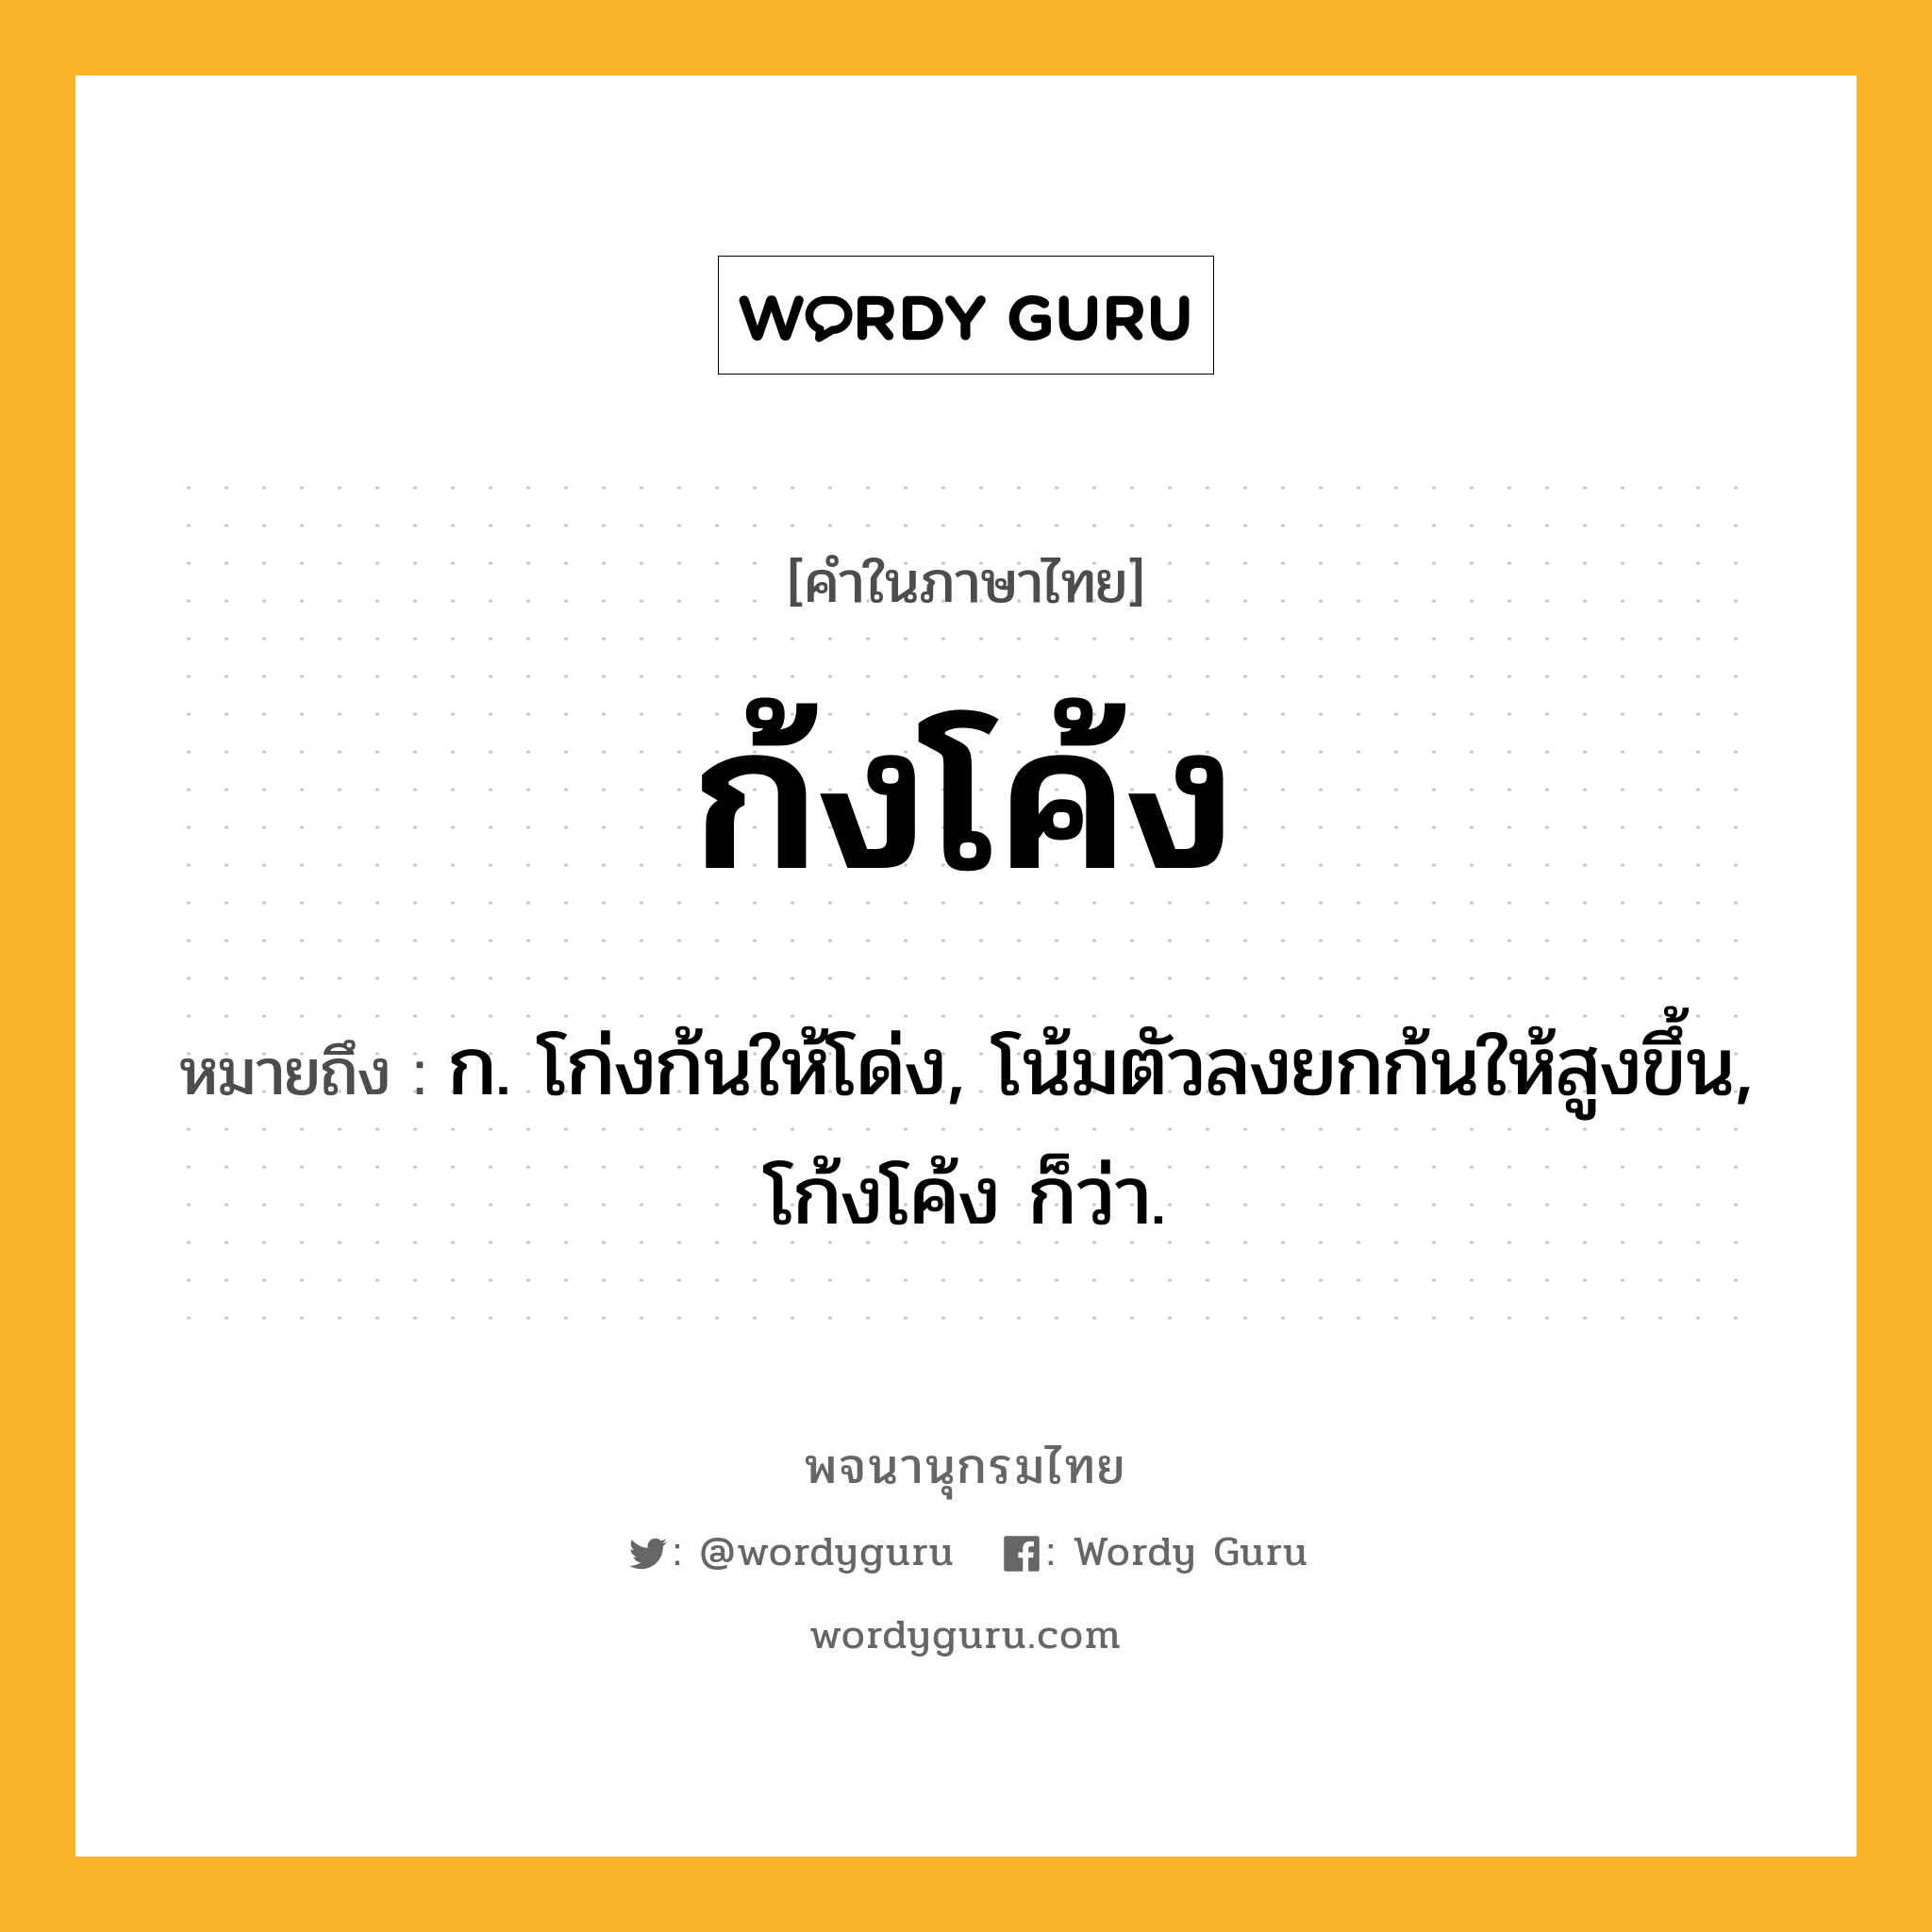 ก้งโค้ง ความหมาย หมายถึงอะไร?, คำในภาษาไทย ก้งโค้ง หมายถึง ก. โก่งก้นให้โด่ง, โน้มตัวลงยกก้นให้สูงขึ้น, โก้งโค้ง ก็ว่า.